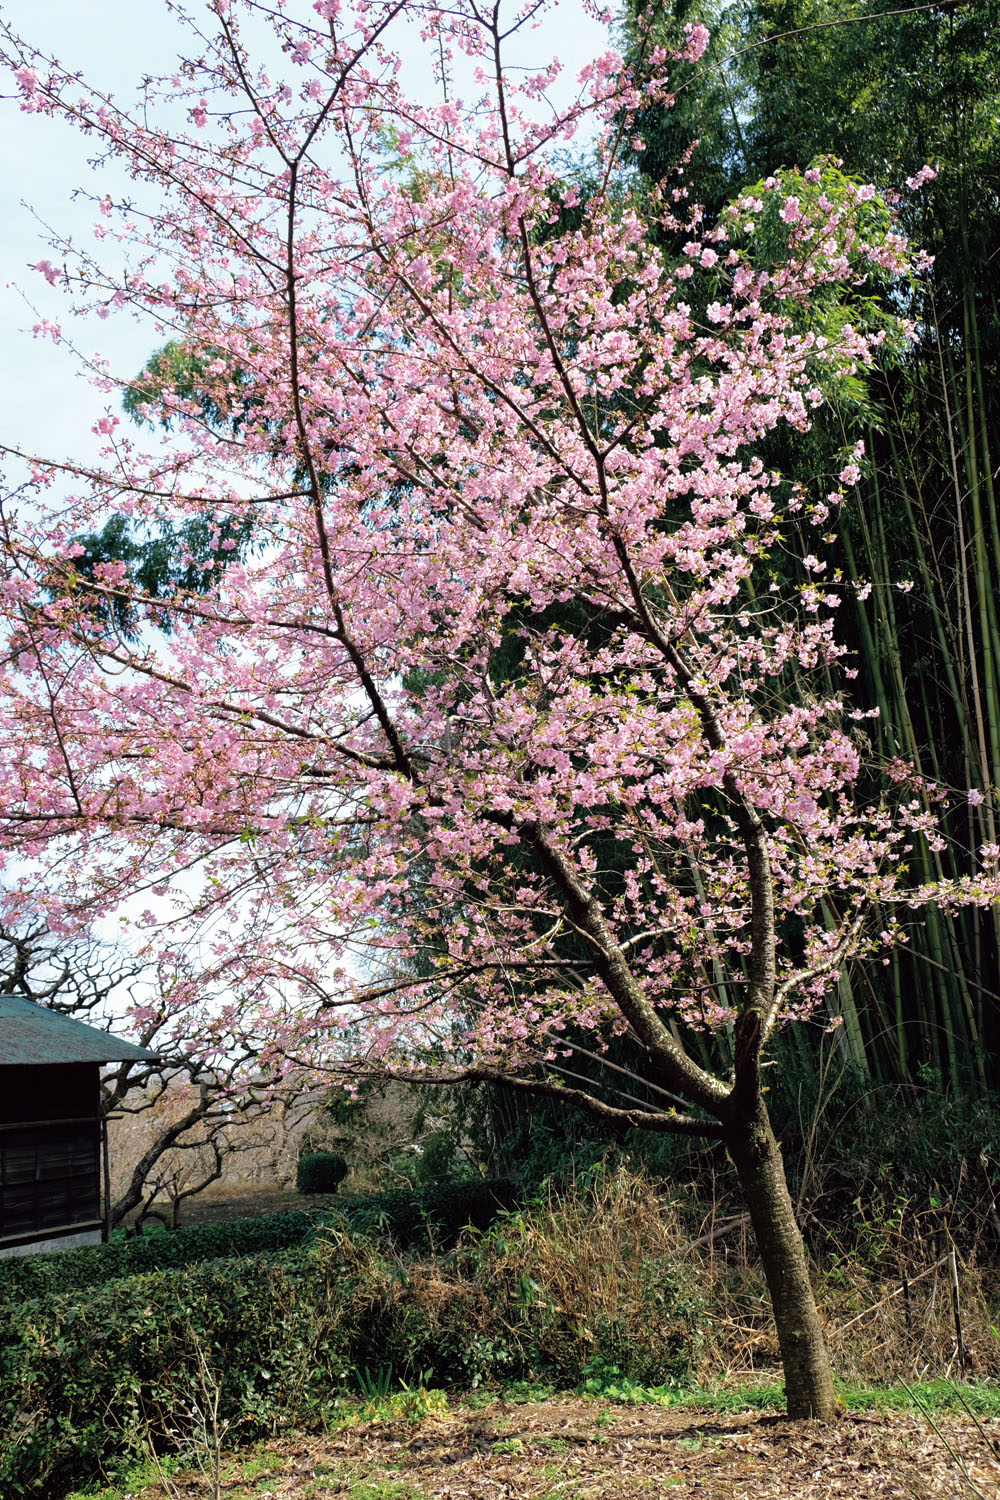 鳶尾山から八菅神社のほうへ下りてくると、古い家なども残っている棚沢の集落へ出る。 民家の庭にきれいな早咲きの桜が咲いていた。